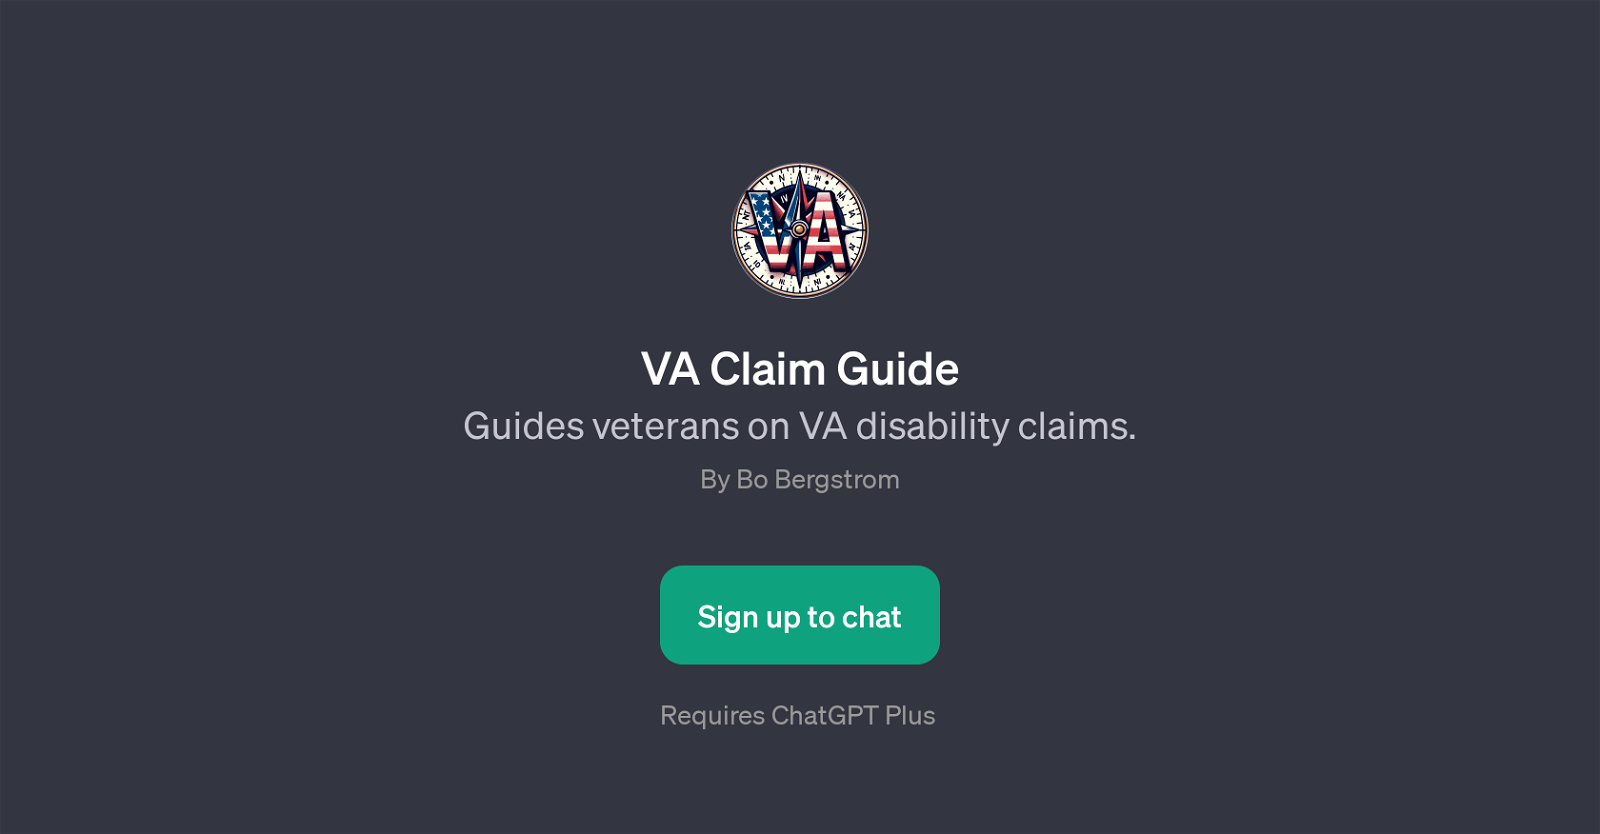 VA Claim Guide website